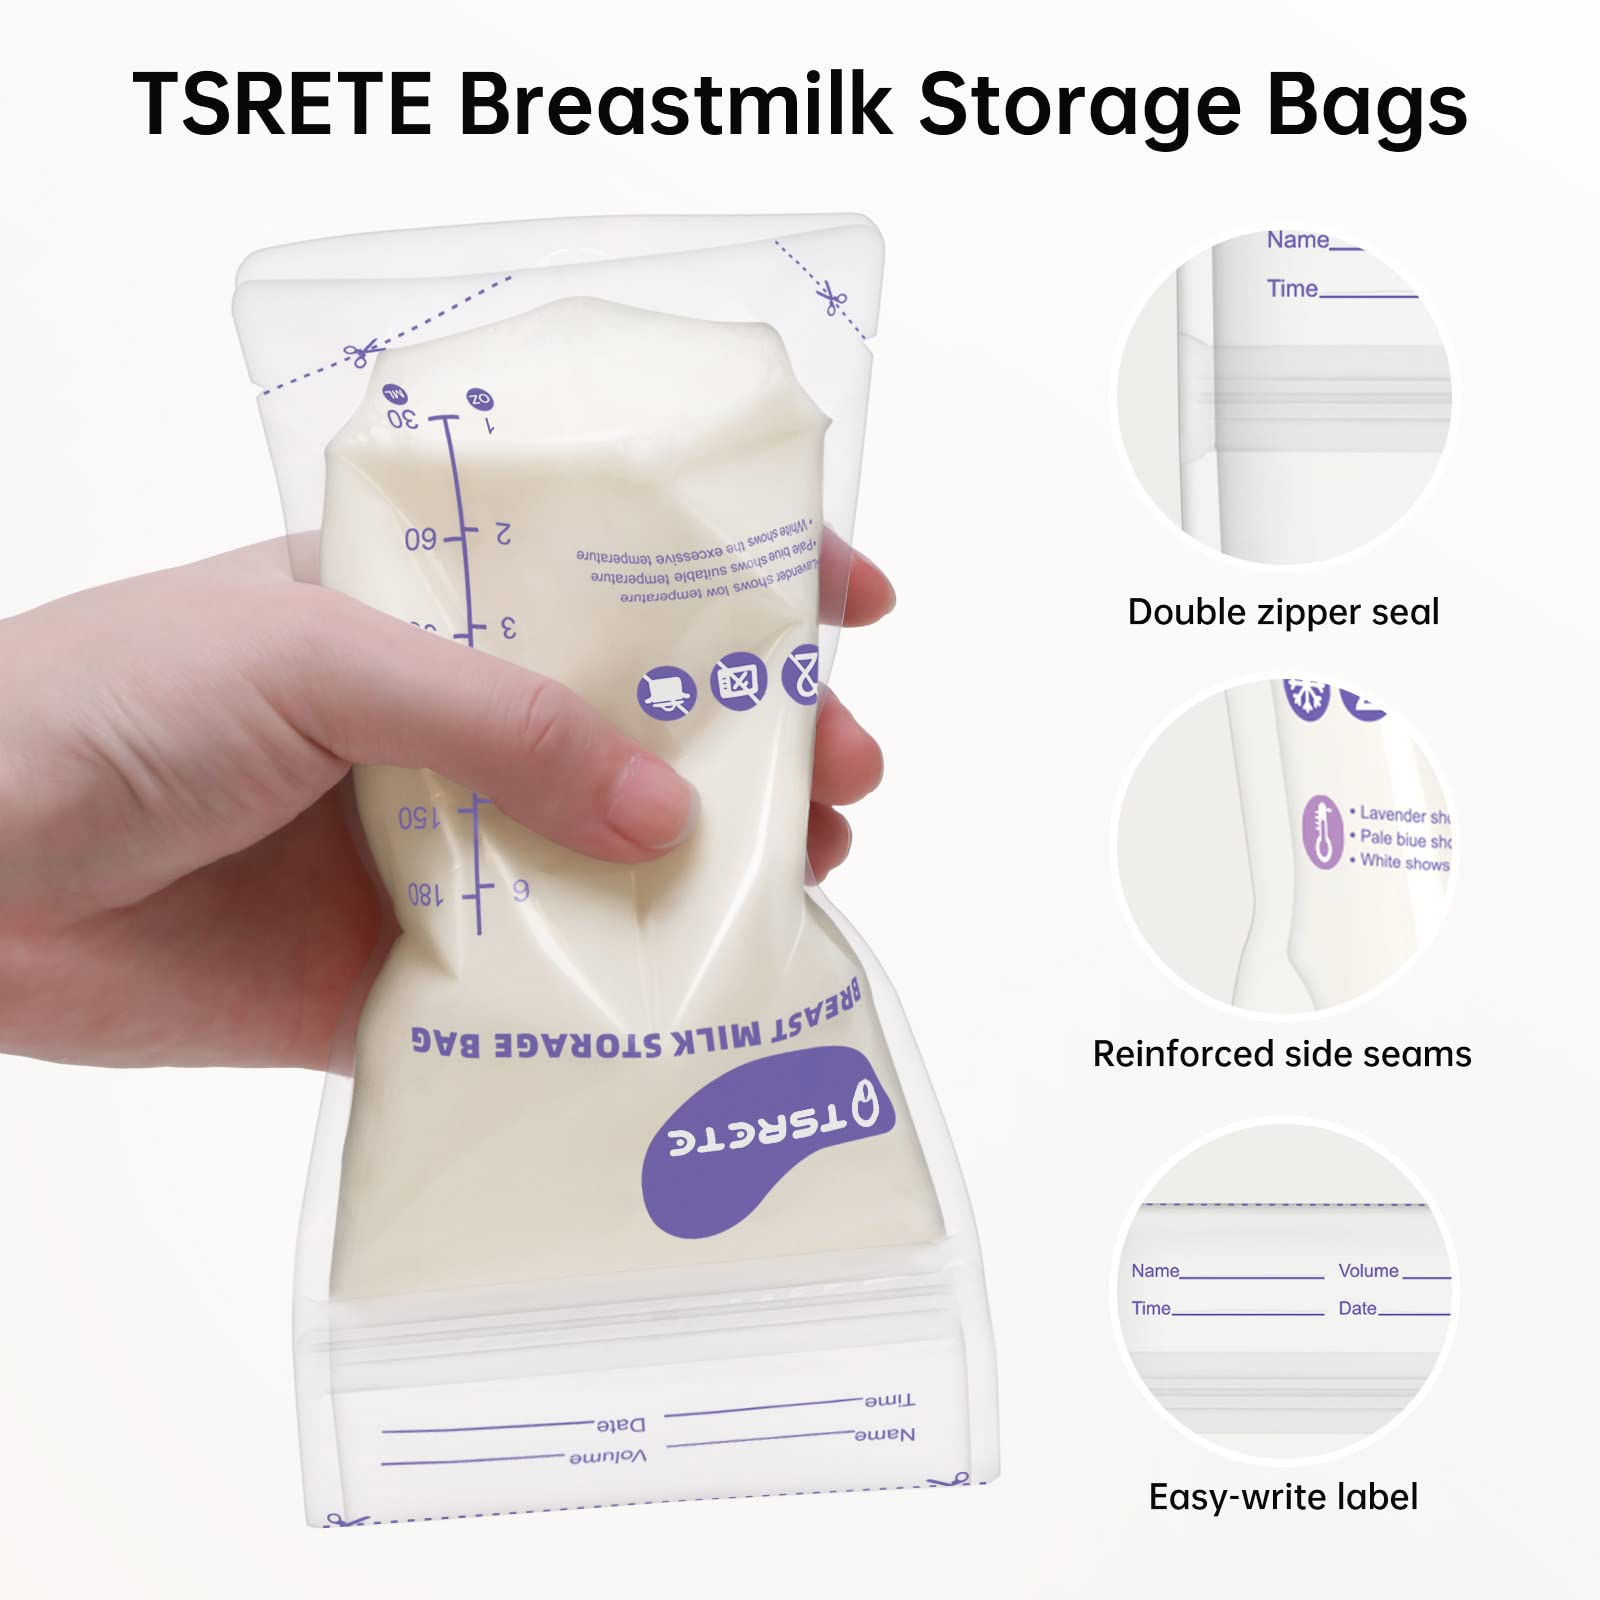 TSRETE Breastmilk Storage Bags